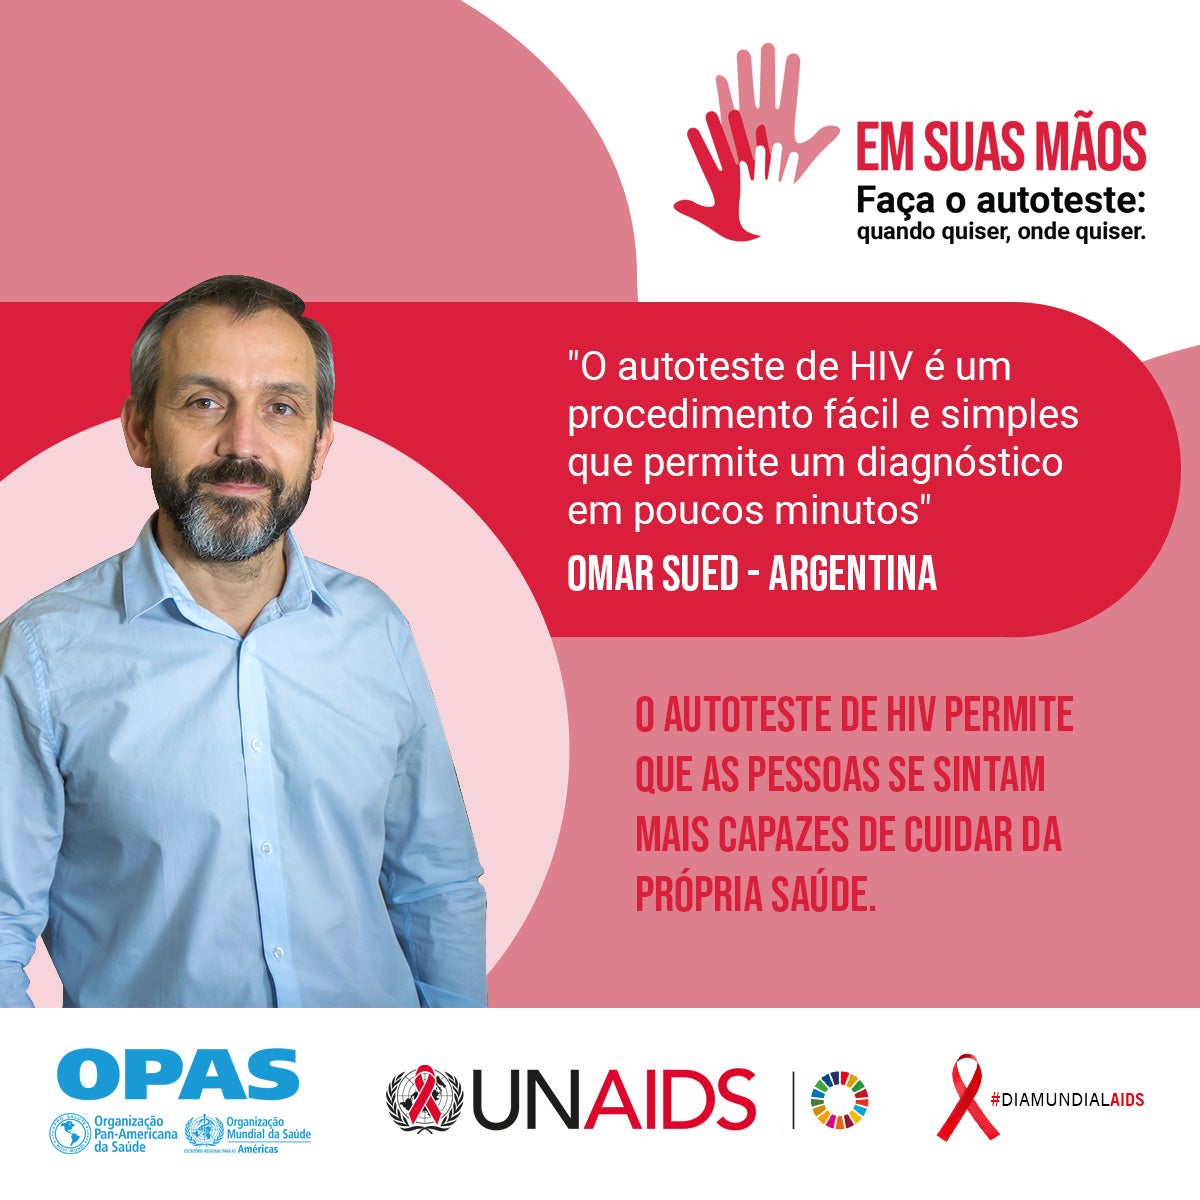 dia mundial aids